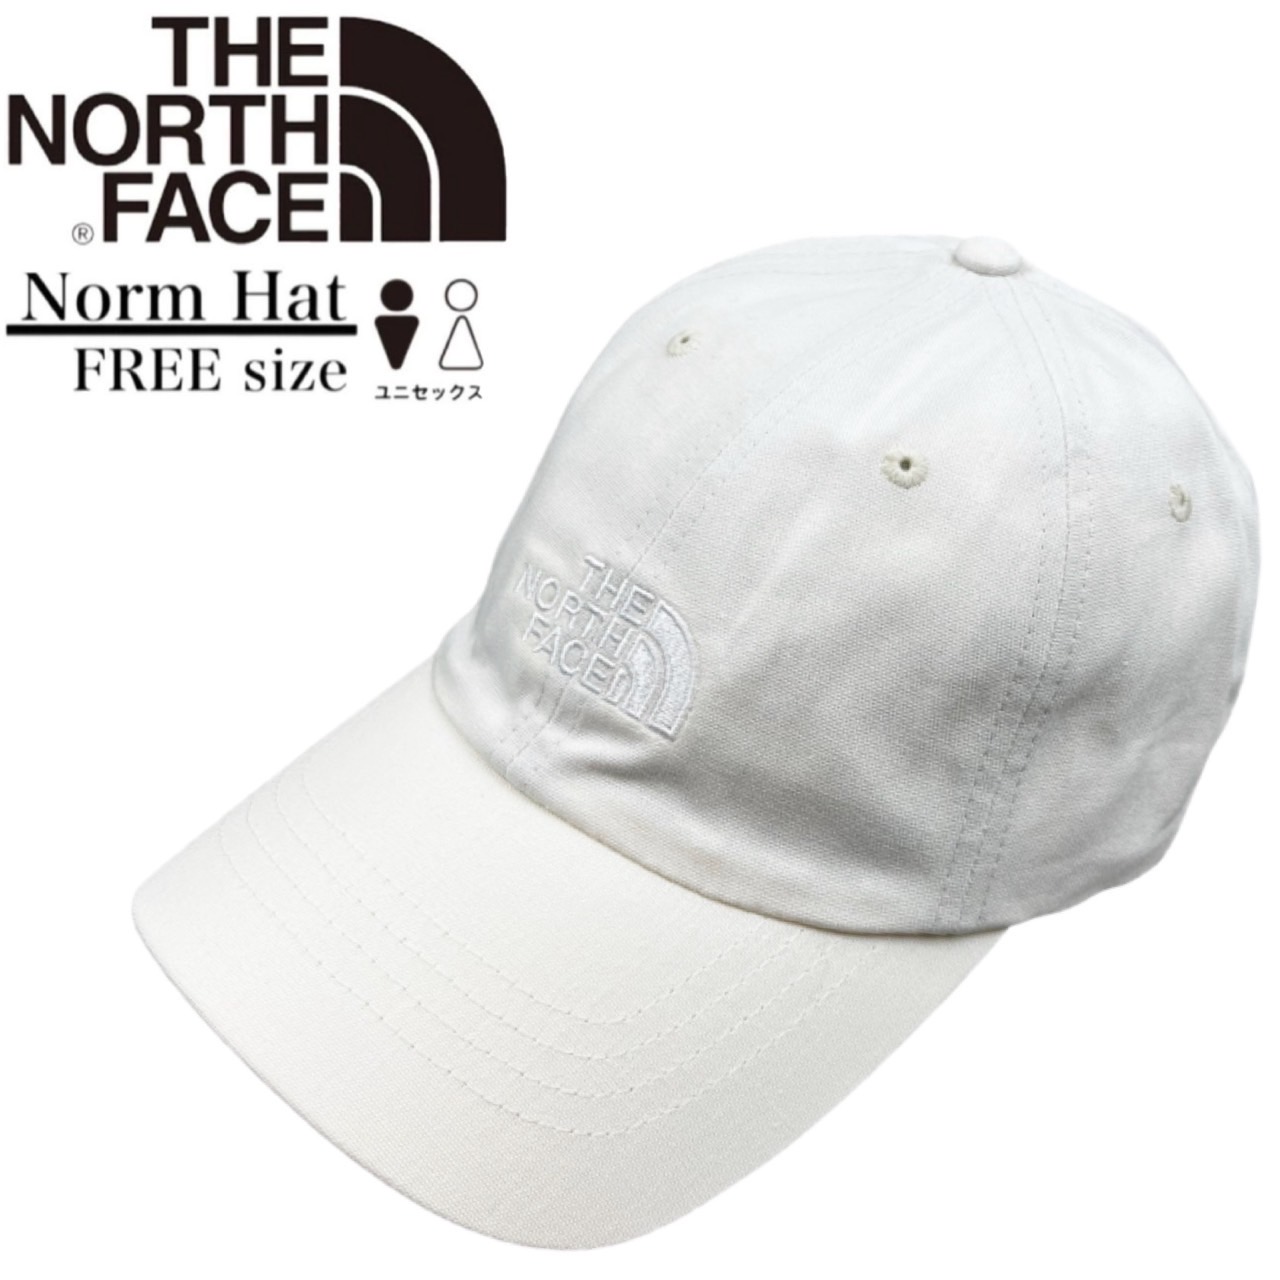 ザ ノースフェイス The North Face ノーム ハット キャップ 帽子 ワン